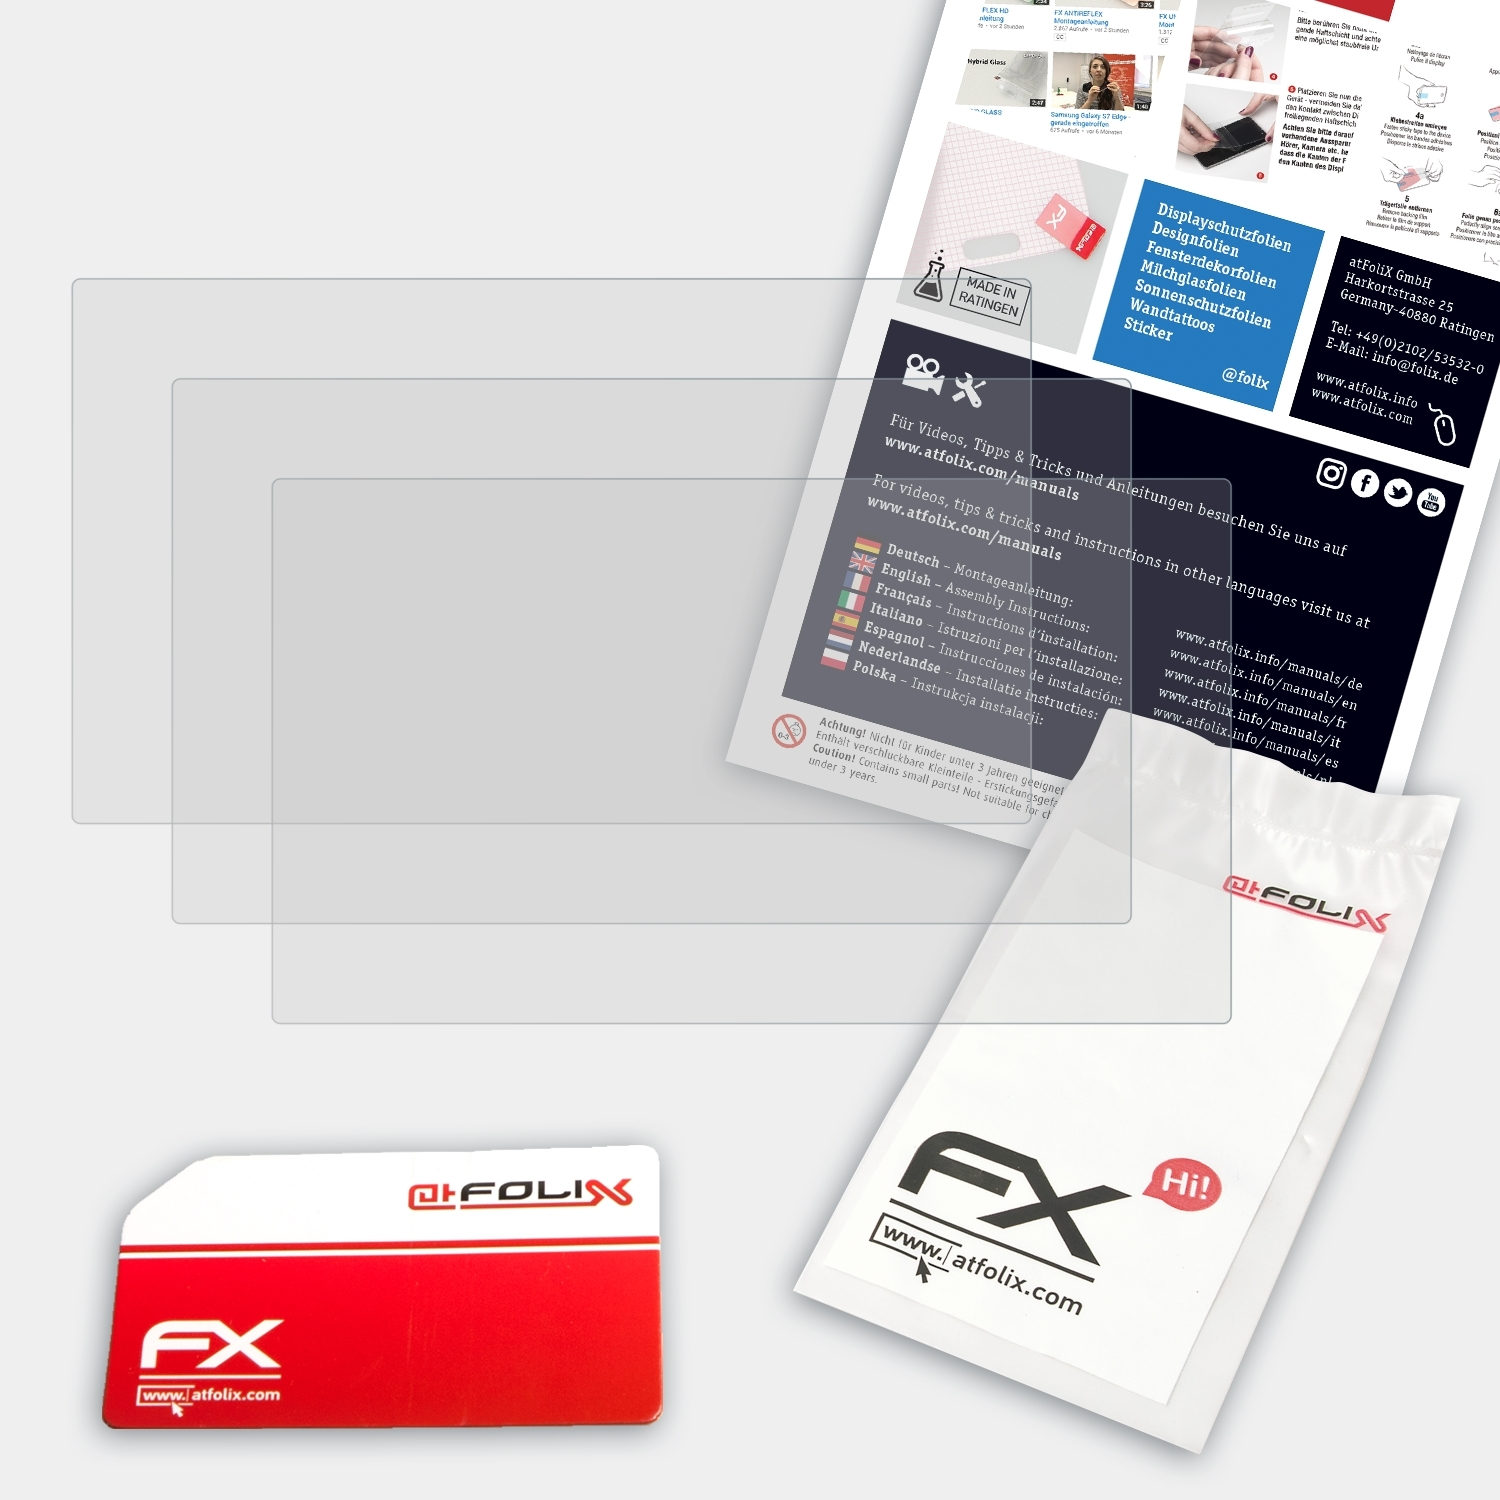 ATFOLIX 3x FX-Antireflex HDR-CX405) Sony Displayschutz(für